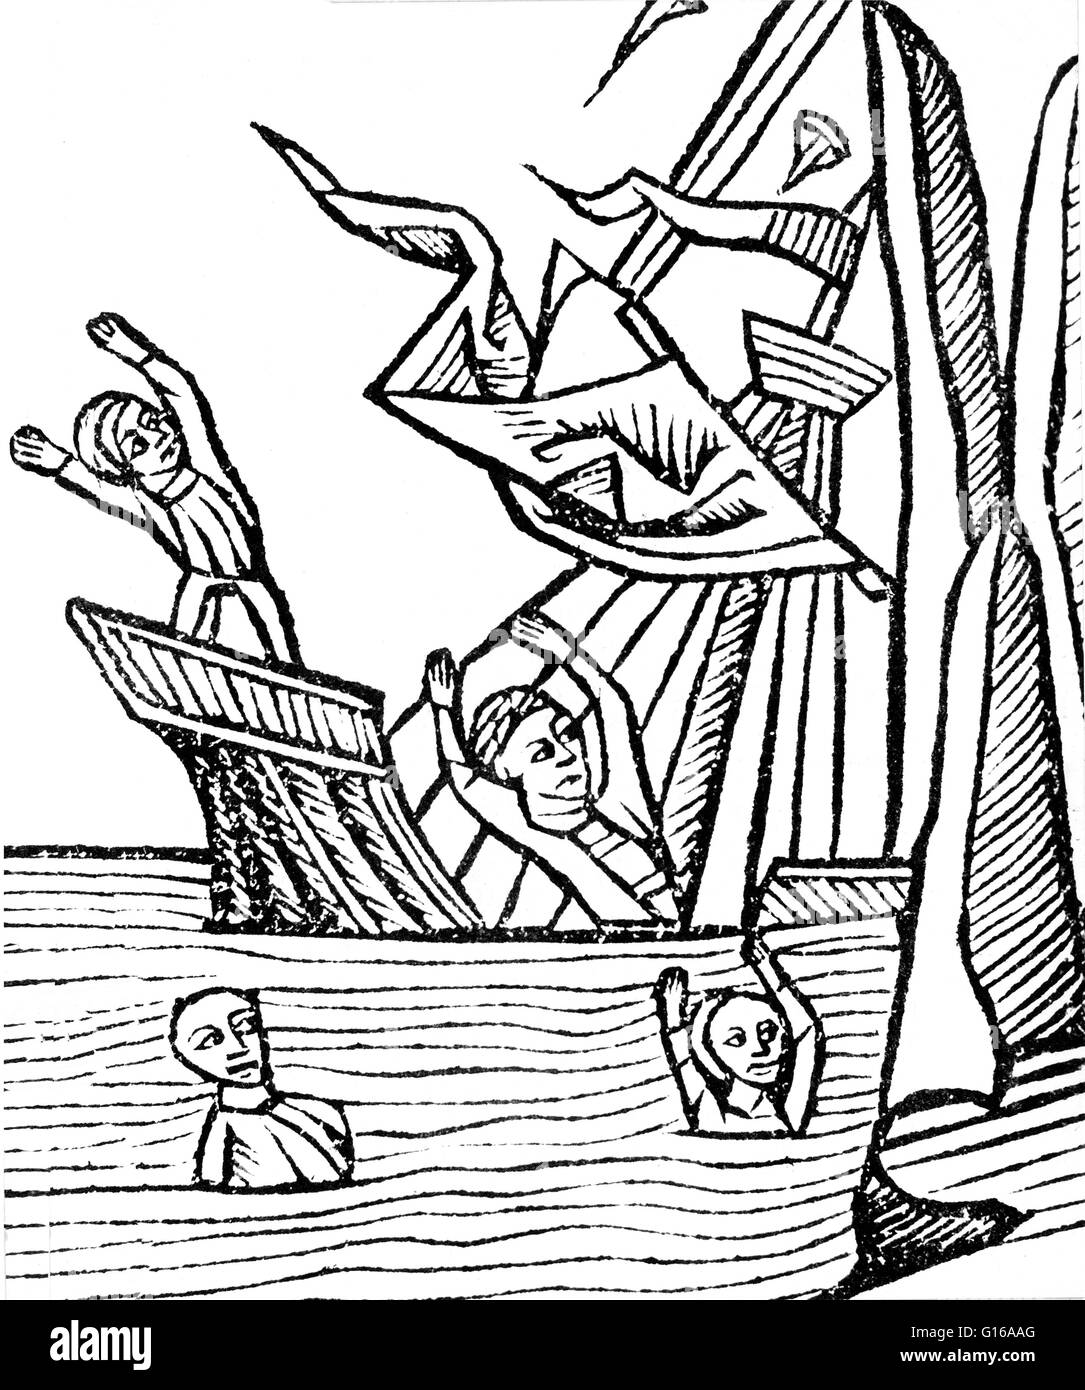 Legenden über magnetische Berge zurück zur klassischen Ära. Ptolemäus erzählt eine Legende über magnetische Inseln (jetzt vermutlich in der Nähe von Borneo) ausgeübt, die eine starke Anziehungskraft auf Schiffen mit Nägeln, die die Schiffe wurden in Position gehalten und konnte mich nicht bewegen Stockfoto